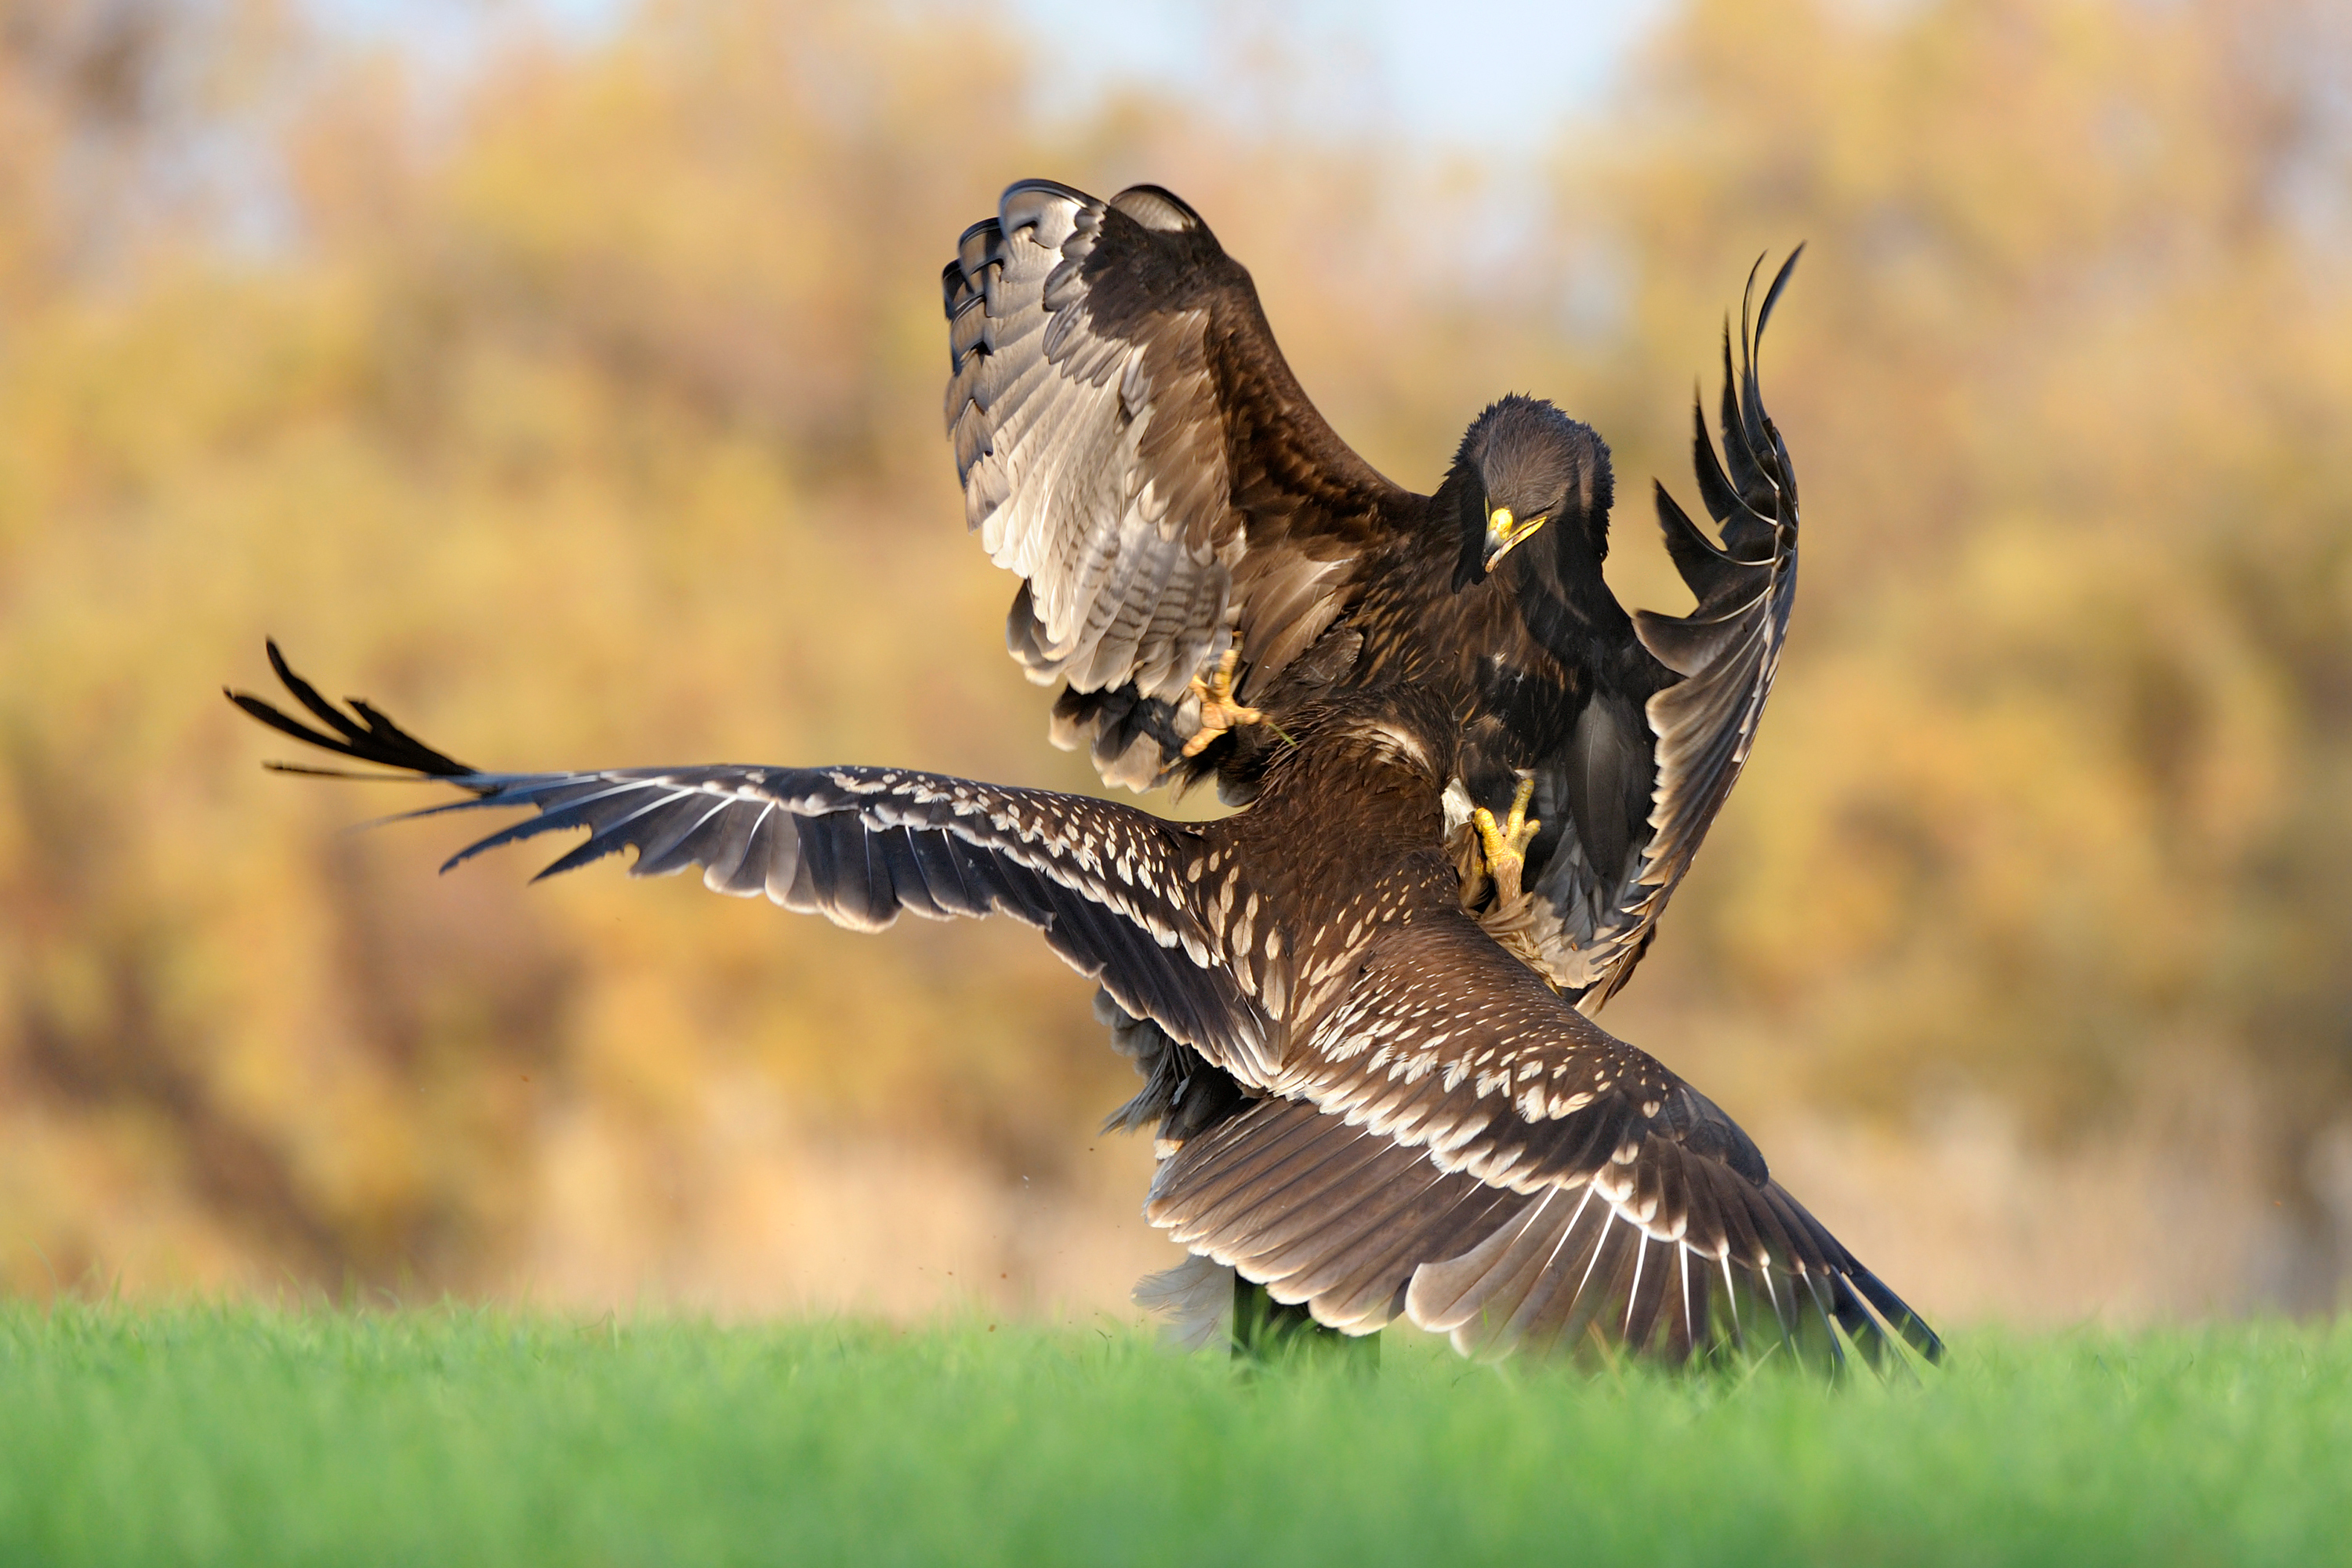 Animais na natureza também têm seus momentos decisivos, como estas águias em luta, e o fotógrafo deve ficar atentos a eles.